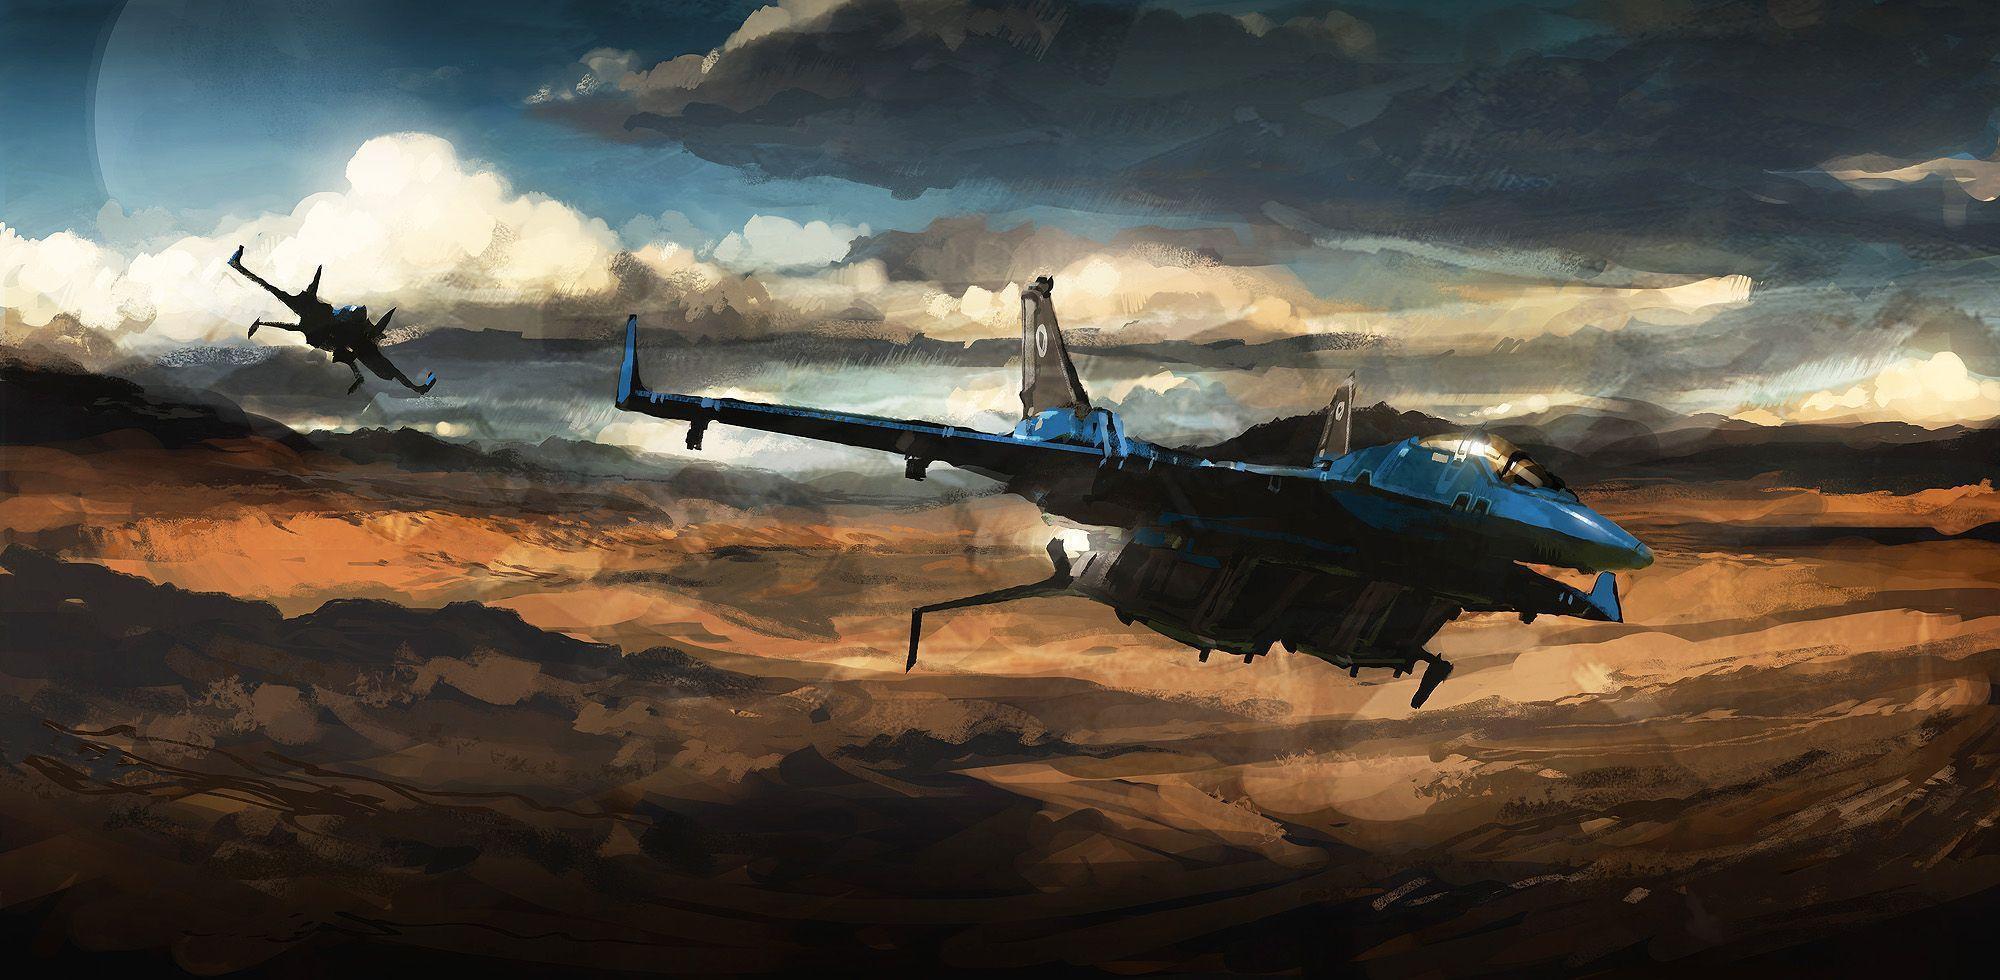 Jet Fighter Wallpaper. Jet Fighter Background